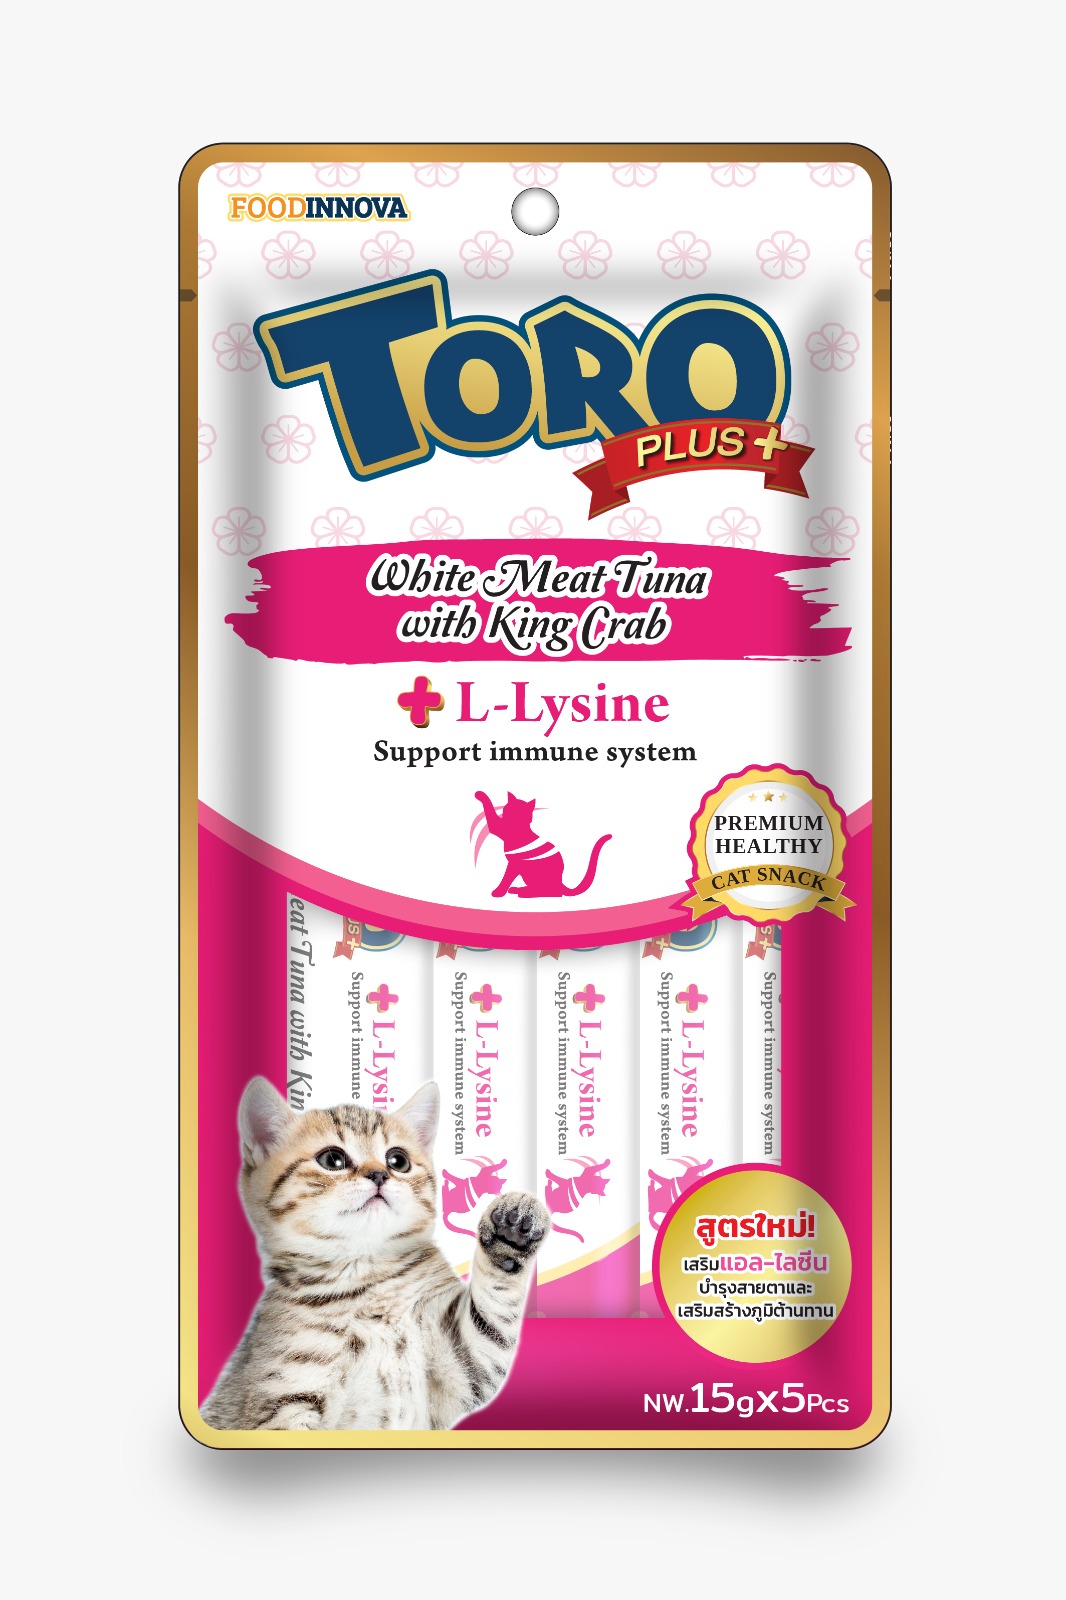 Toro Plus White